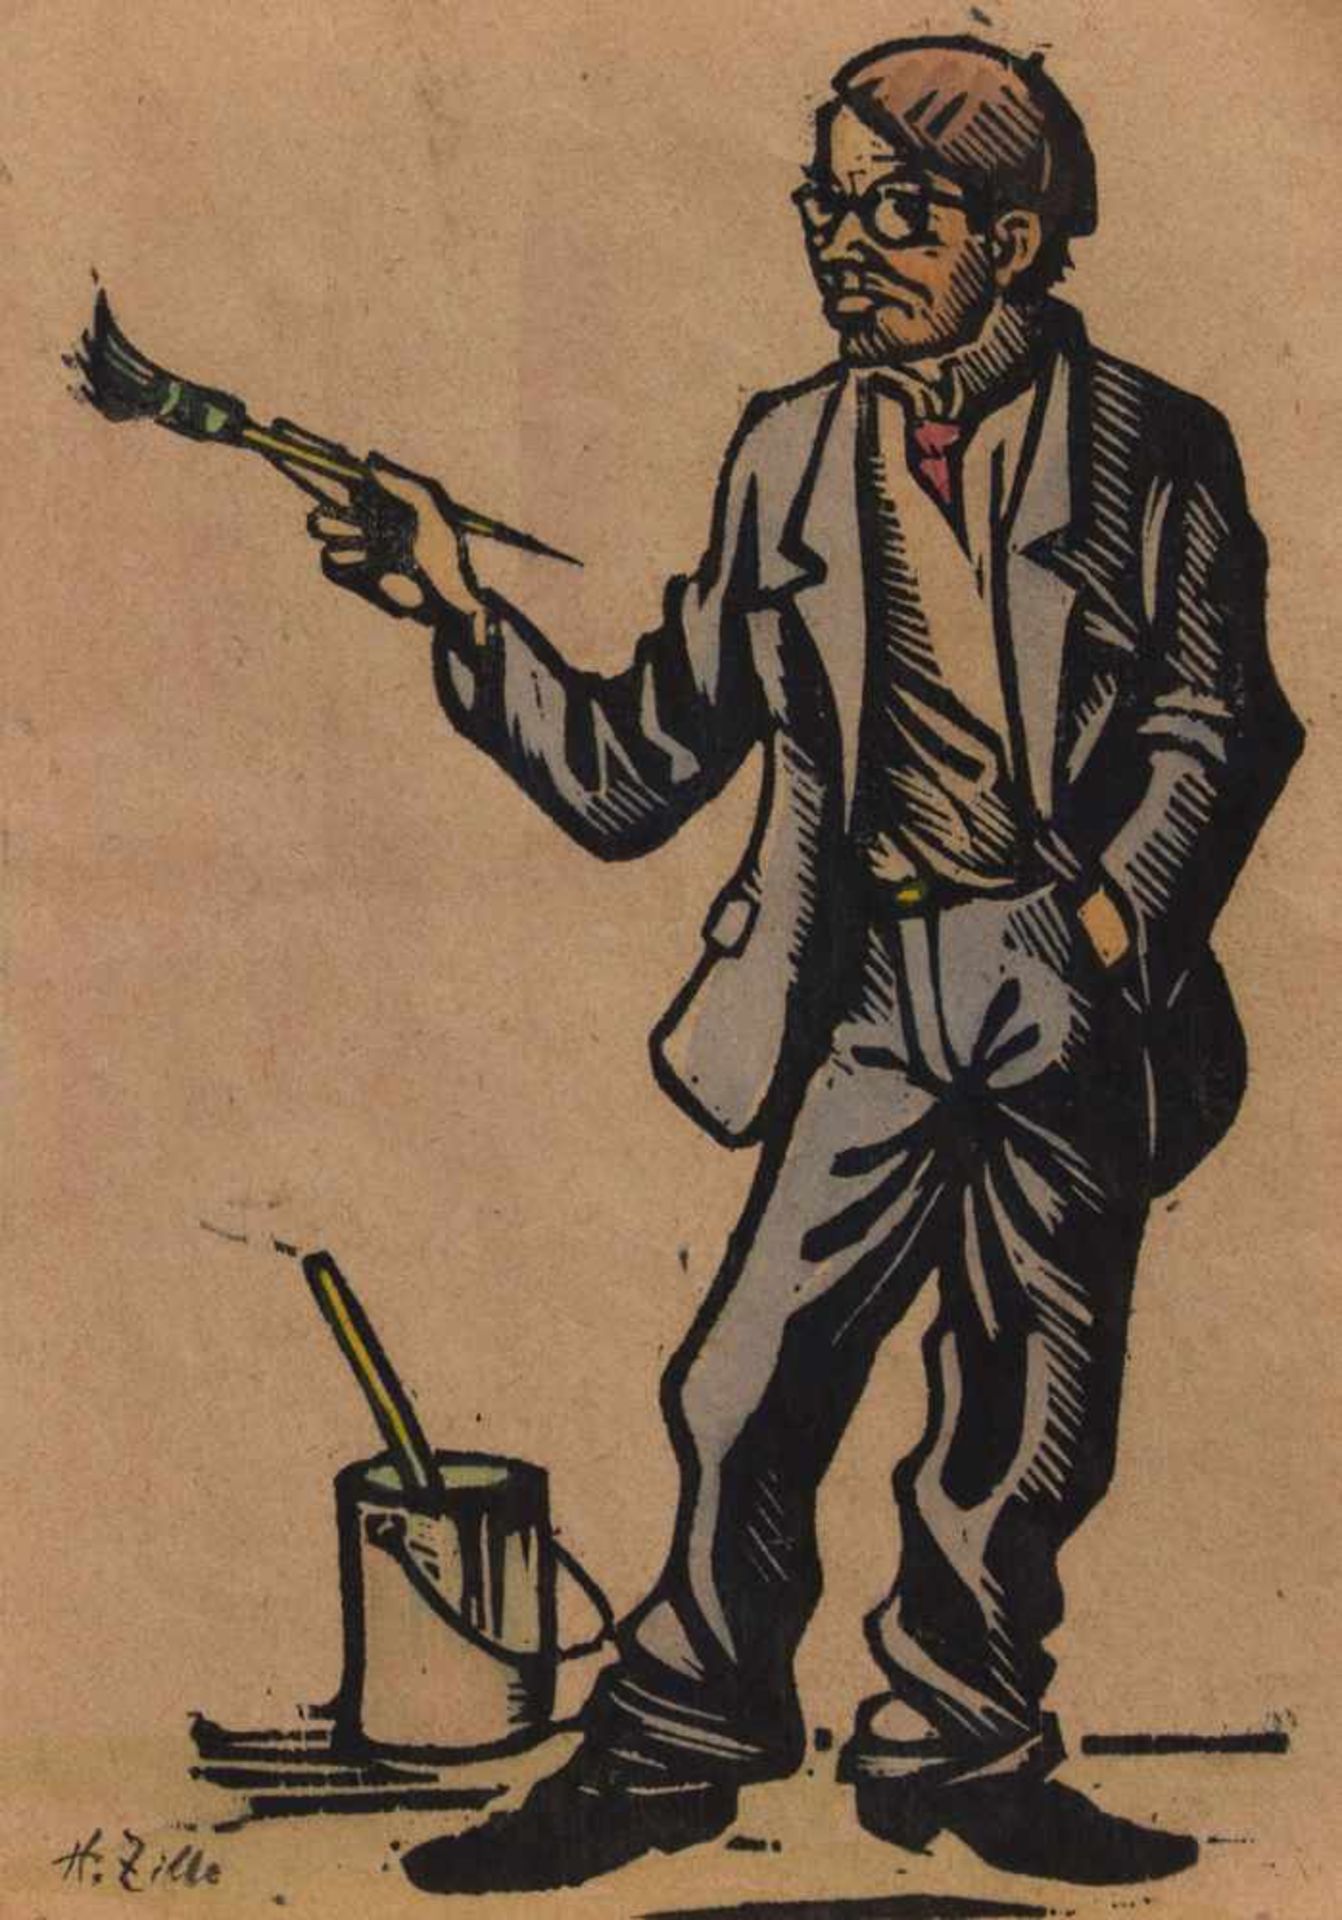 Heinrich Zille (1858 Radeburg - 1929 Berlin, deutscher Zeichner, Maler u. Grafiker, lernte u.